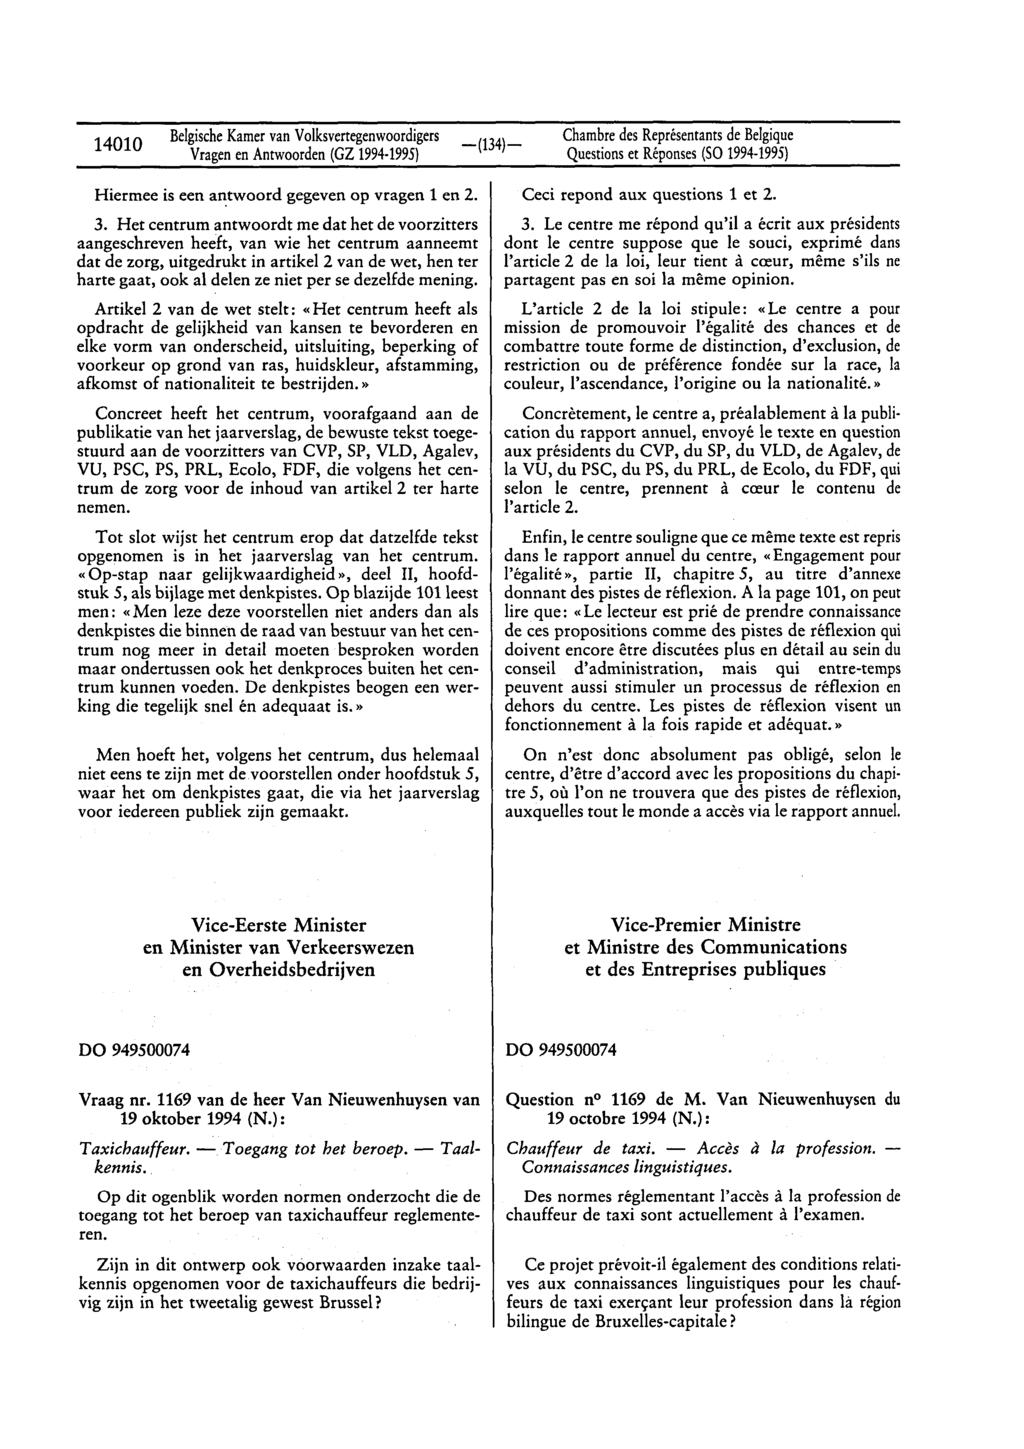 14010 BelgischeKamervan Volksvertegenwoordigers Questionset Réponses(SO 1994-1995) Hiermee is een antwoord gegeven op vragen 1 en 2. 3.